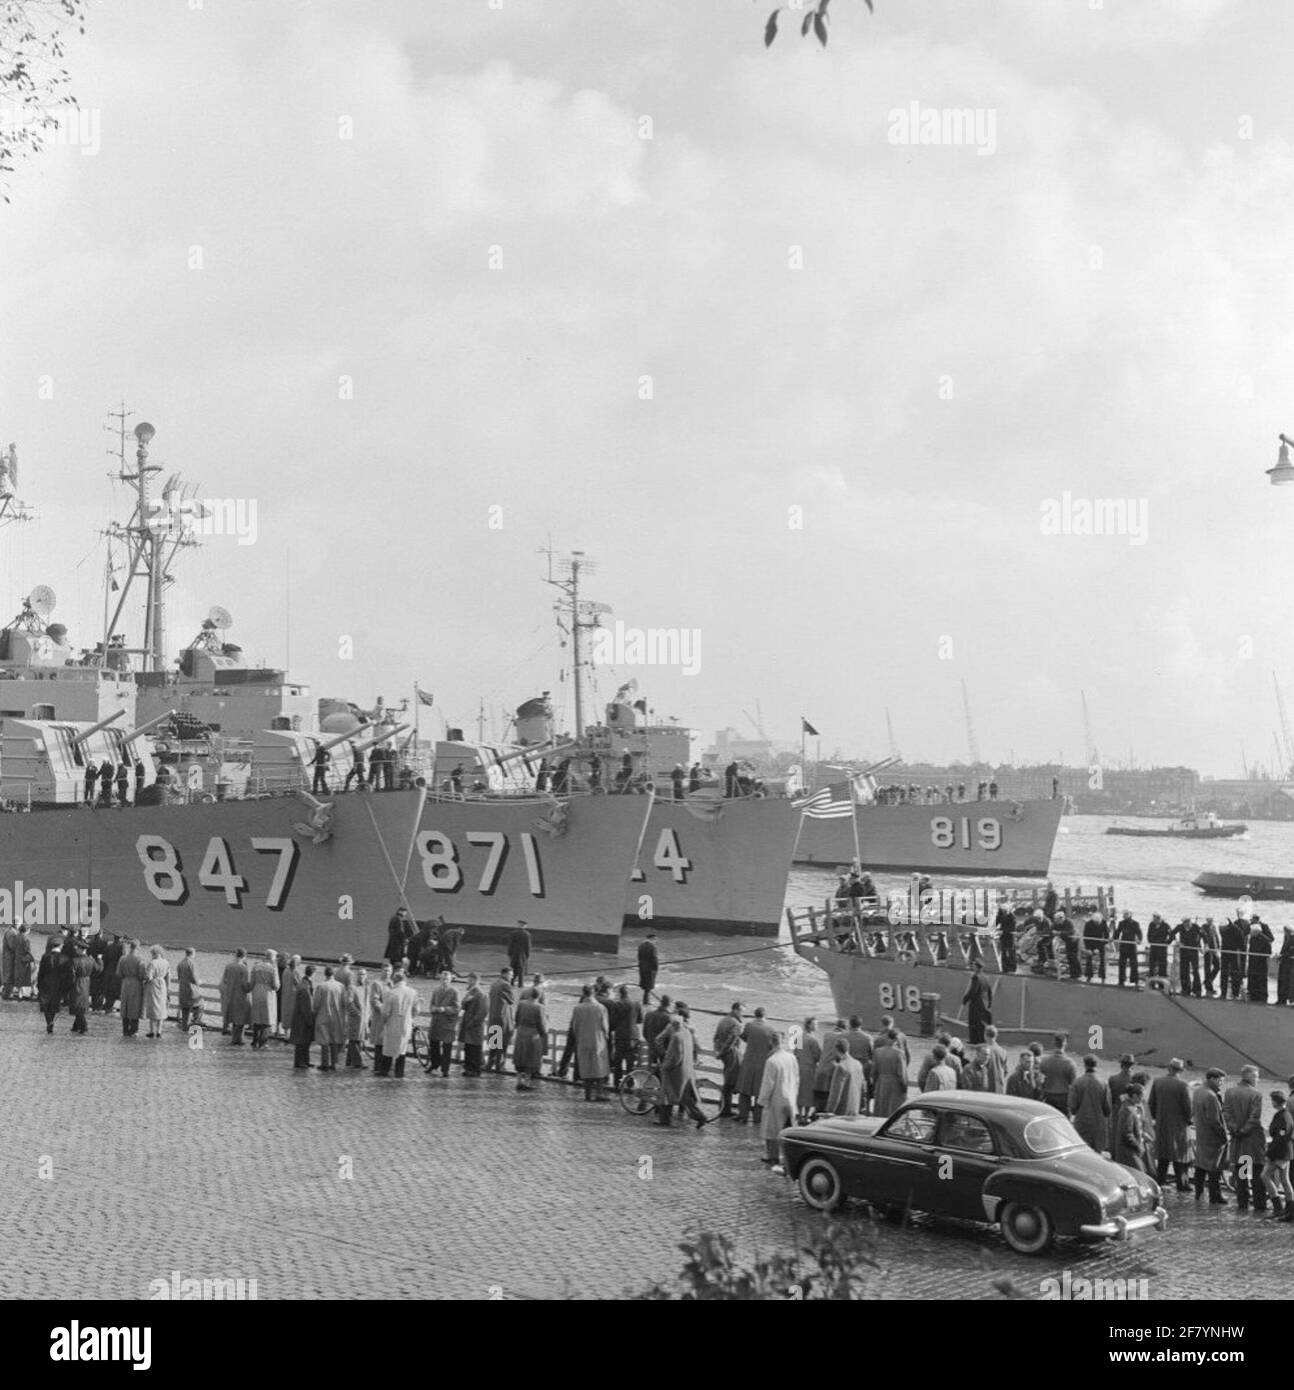 Visita del Hunter Killing Group 2. I cacciatorpediniere americani sono ormeggiati al Parkkade. Da sinistra a destra: La USS Robert L. Wilson (847, 1946-1974), la USS Damato (871, 1946-1980), la USS Basilone (824, 1949-1977) e la USS Holder (819, 1946-1976). Per questa nuova USS (818, 1946-1976). Il Hunter Killing Group 2 visiterà Rotterdam dal 29 ottobre al 1° novembre 1956. A causa dello scoppio delle crisi di Suez, tuttavia, le navi sono già partito il 30 ottobre 1956. Il Hunter Killing Group 2 consisteva di: La nave di volo USS Antietam (1945-1963), la nave cisterna USS Neosho (1954-1978), distruggere Foto Stock